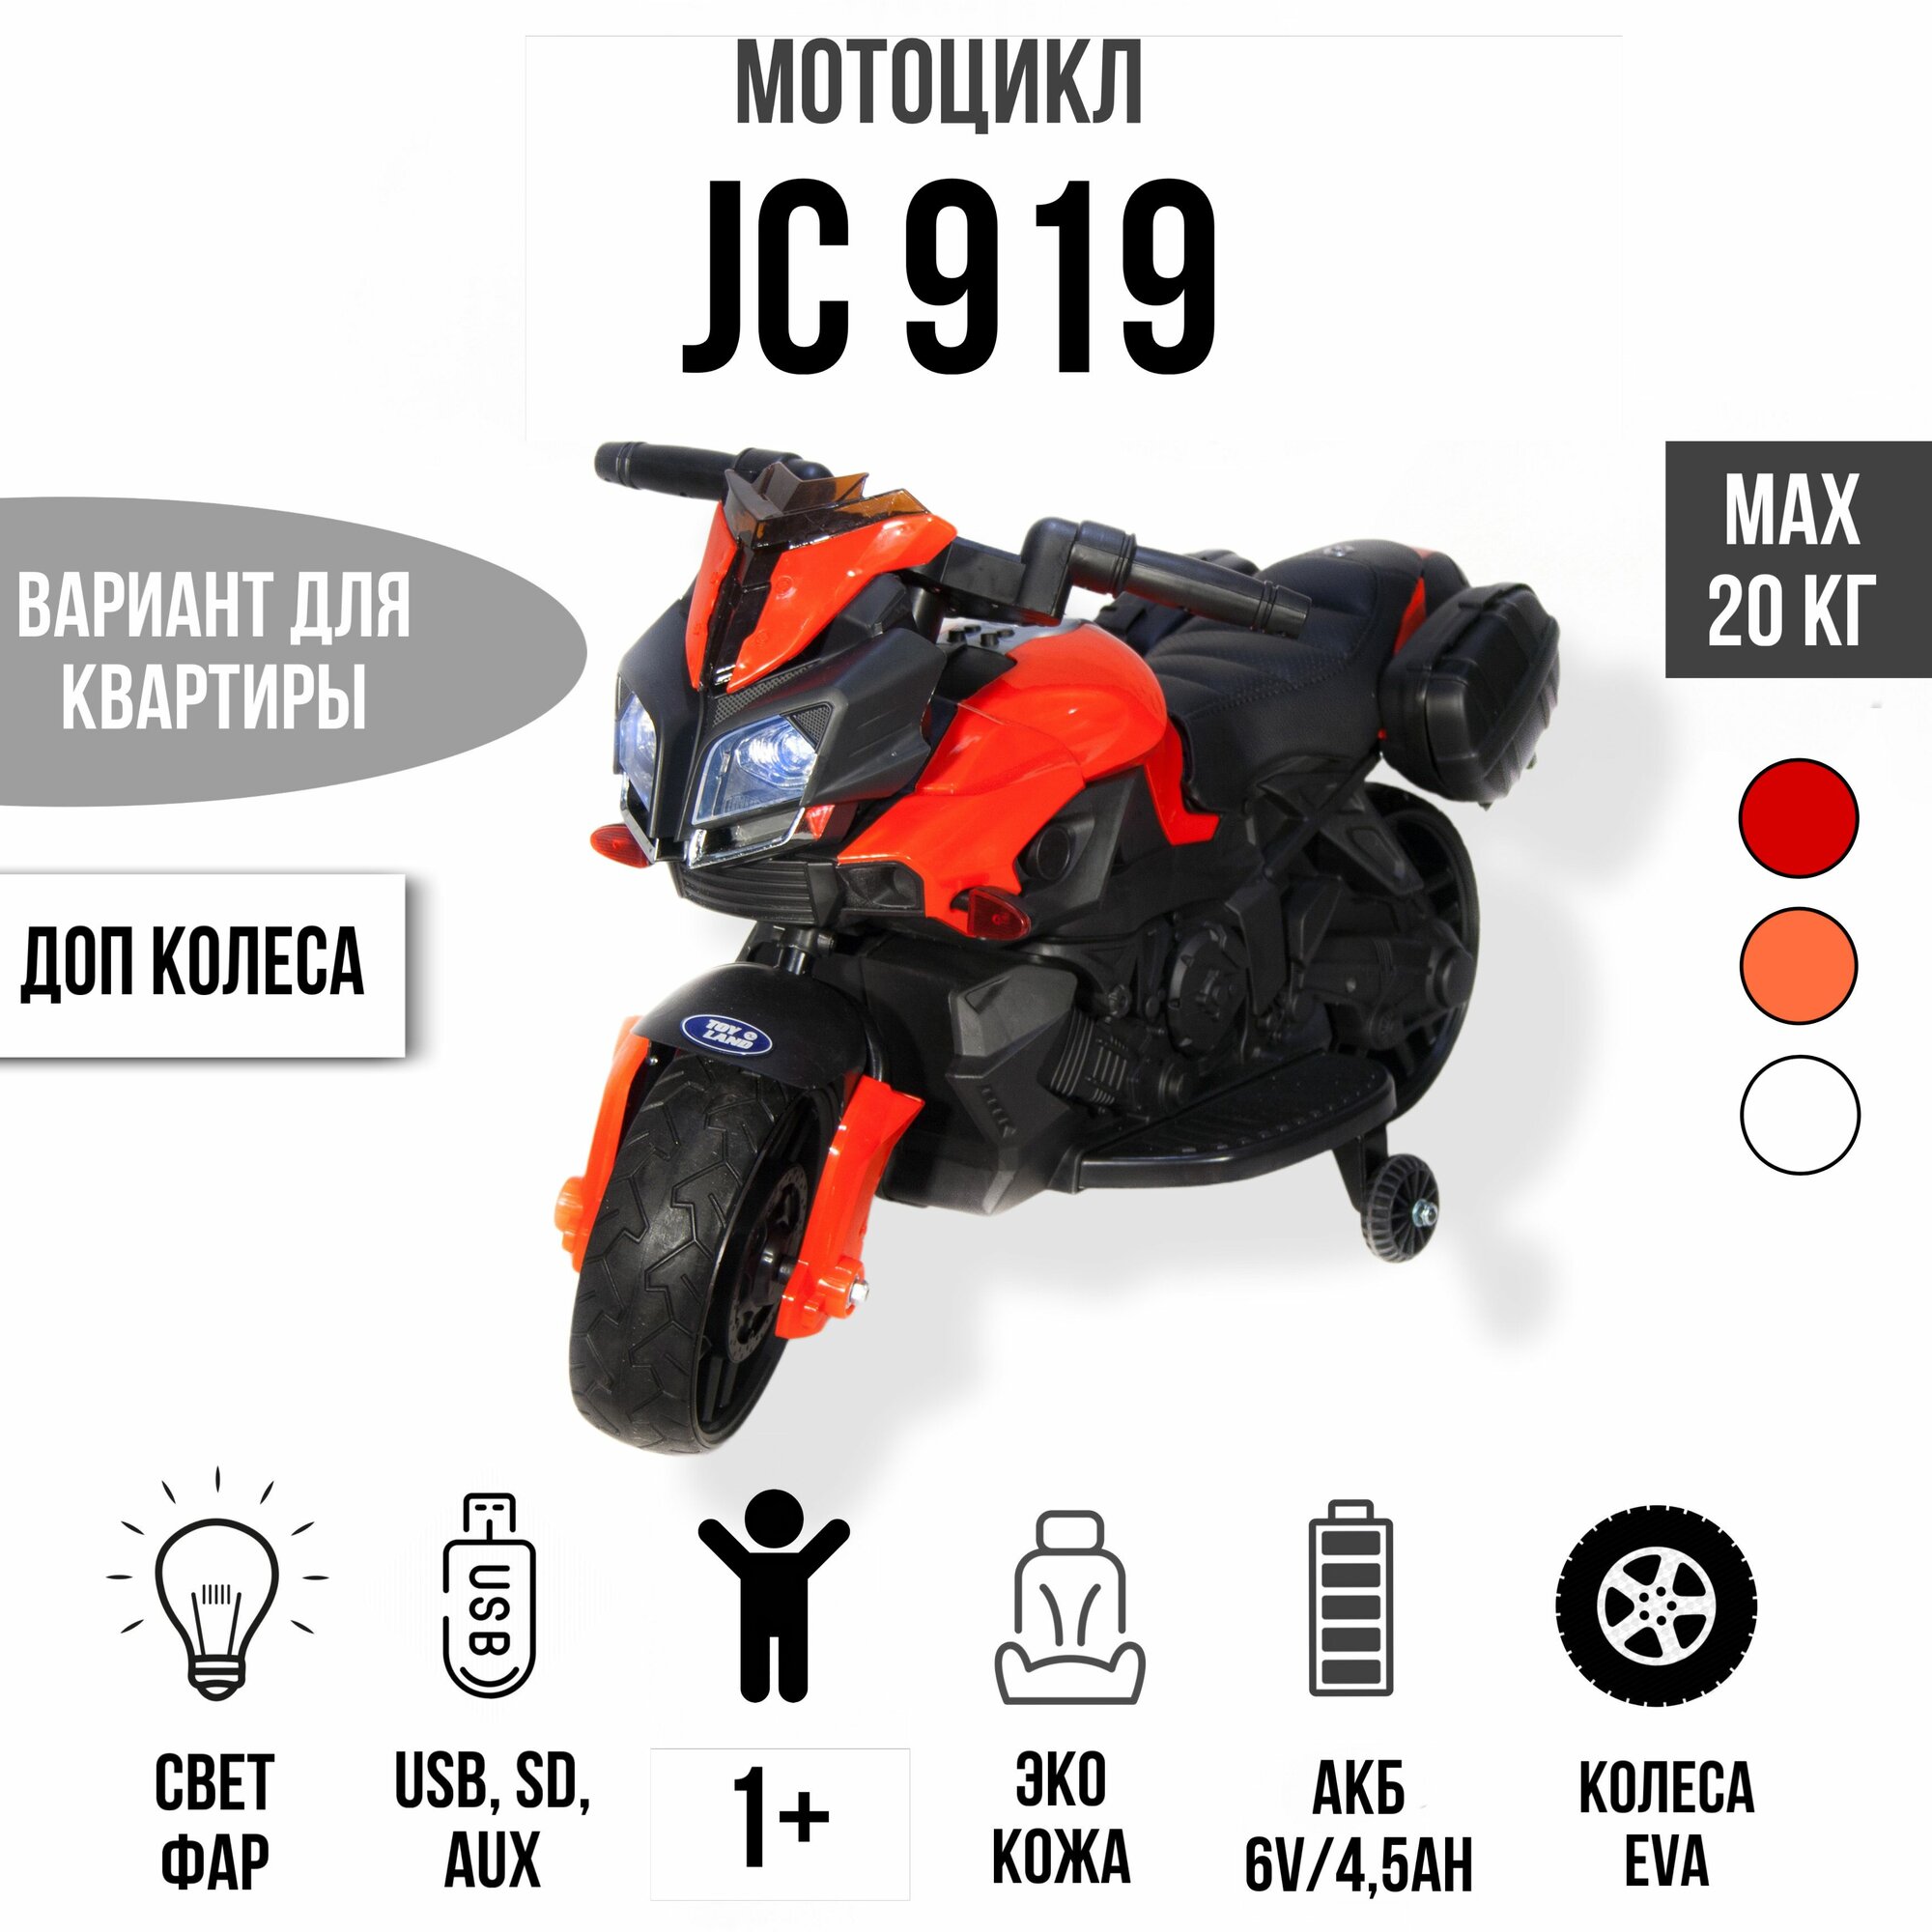 Мотоцикл Minimoto JC919